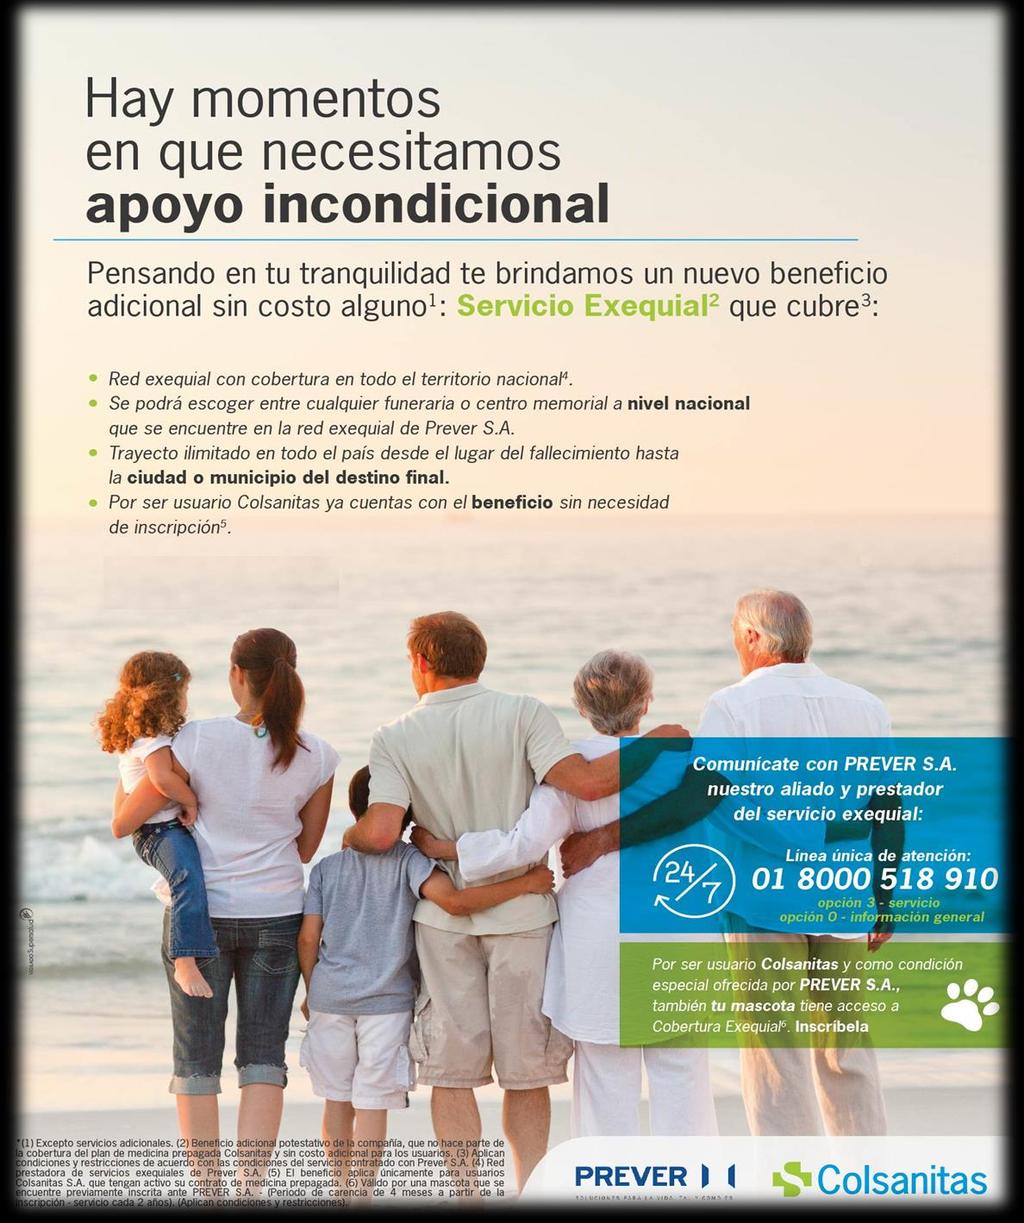 Servicio Exequial A partir del 1 de enero de 2018 los usuarios de contratos Colsanitas: familiares, convenios y colectivos, cuentan con el